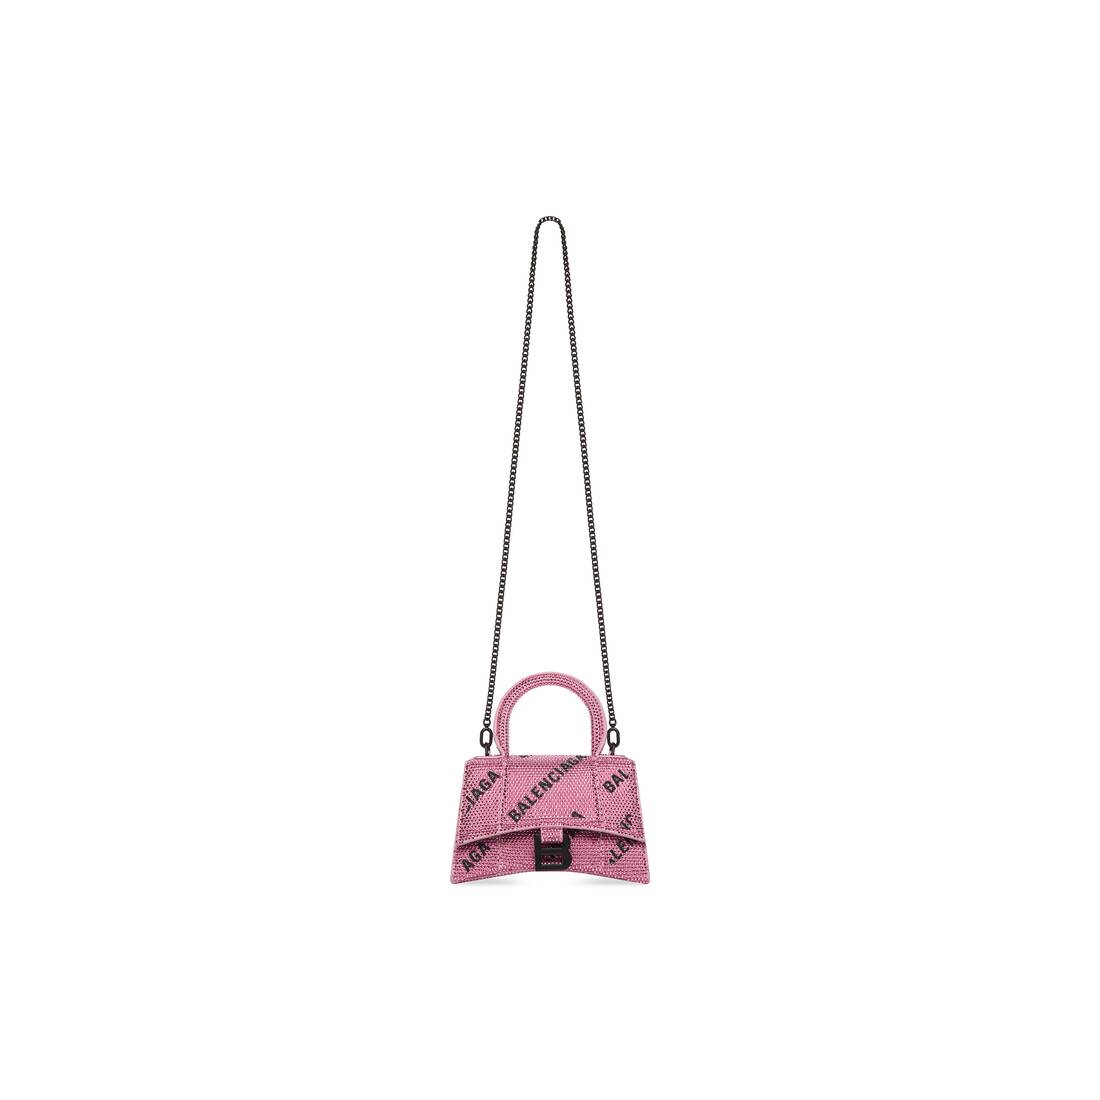 Balenciaga hourglass xs hot pink  Pink balenciaga bag, Balenciaga